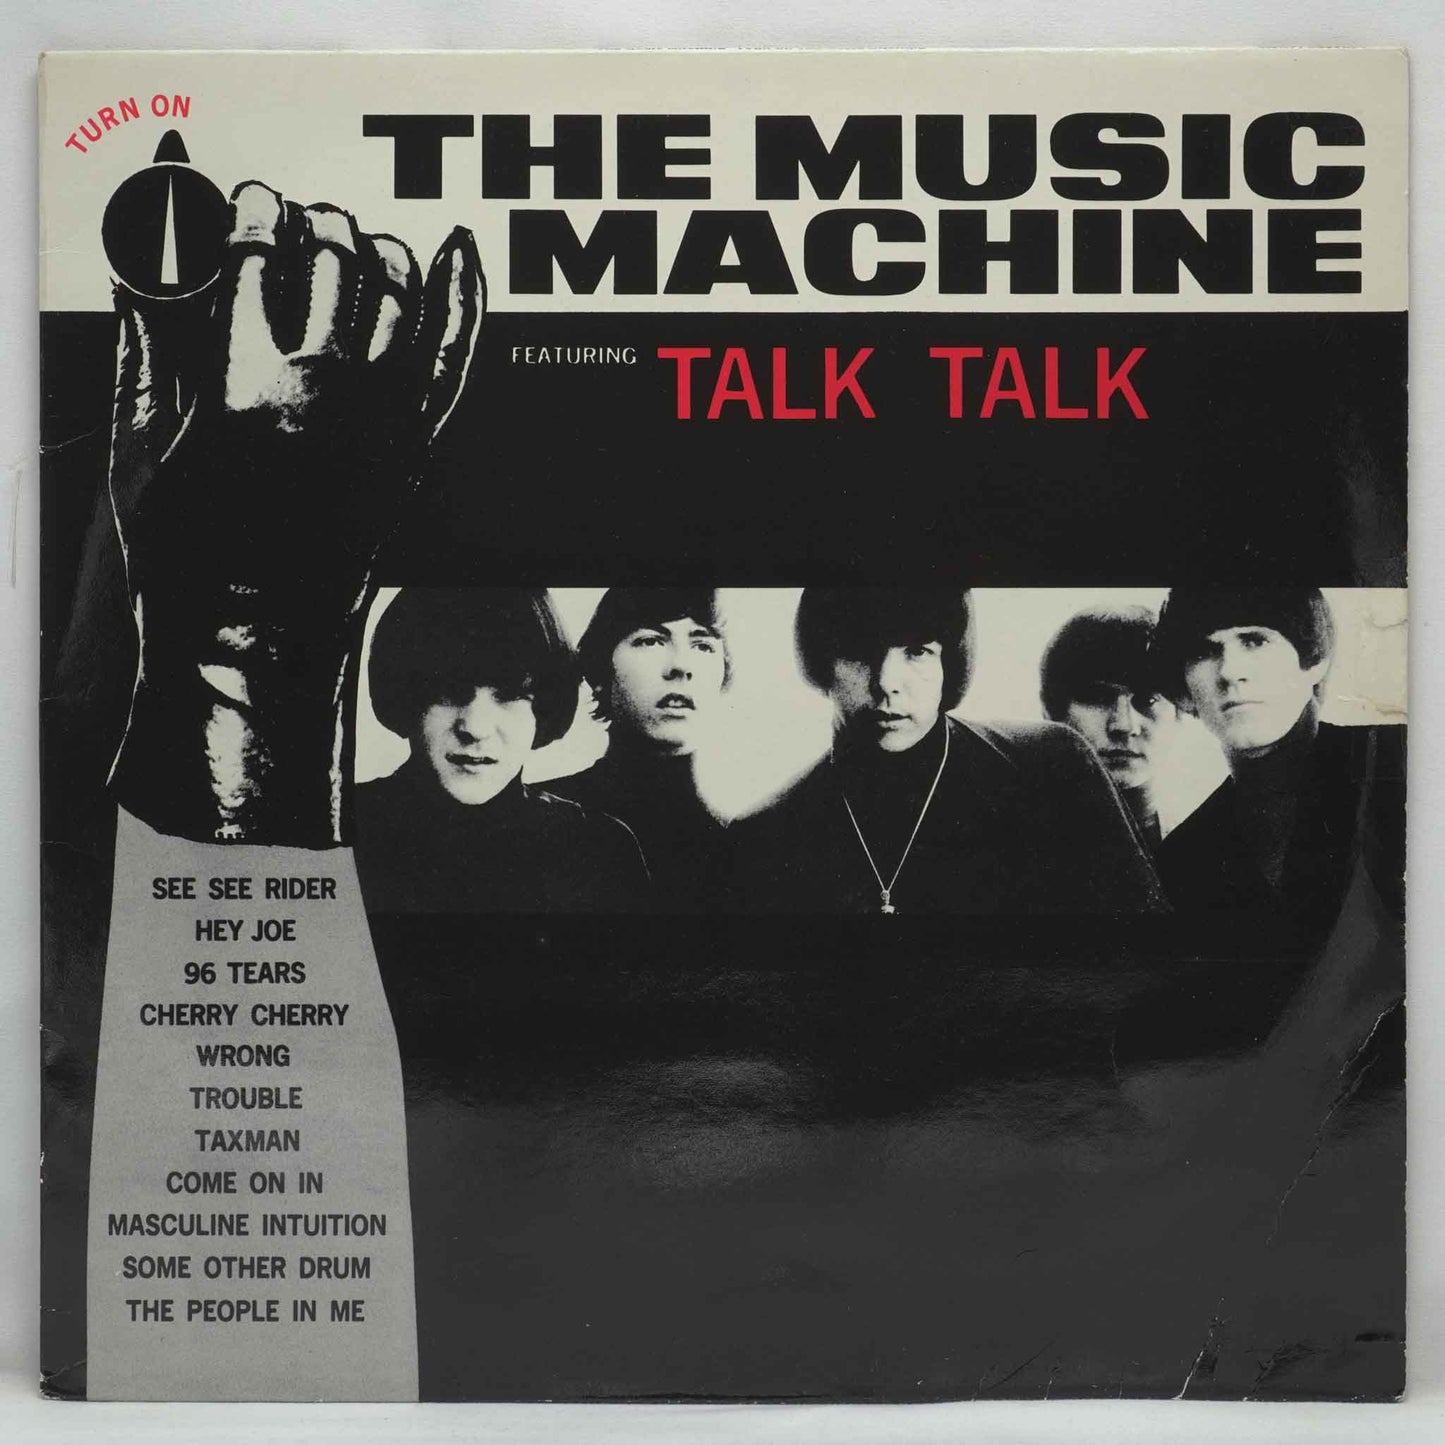 The Music Machine – (Turn On) The Music Machine